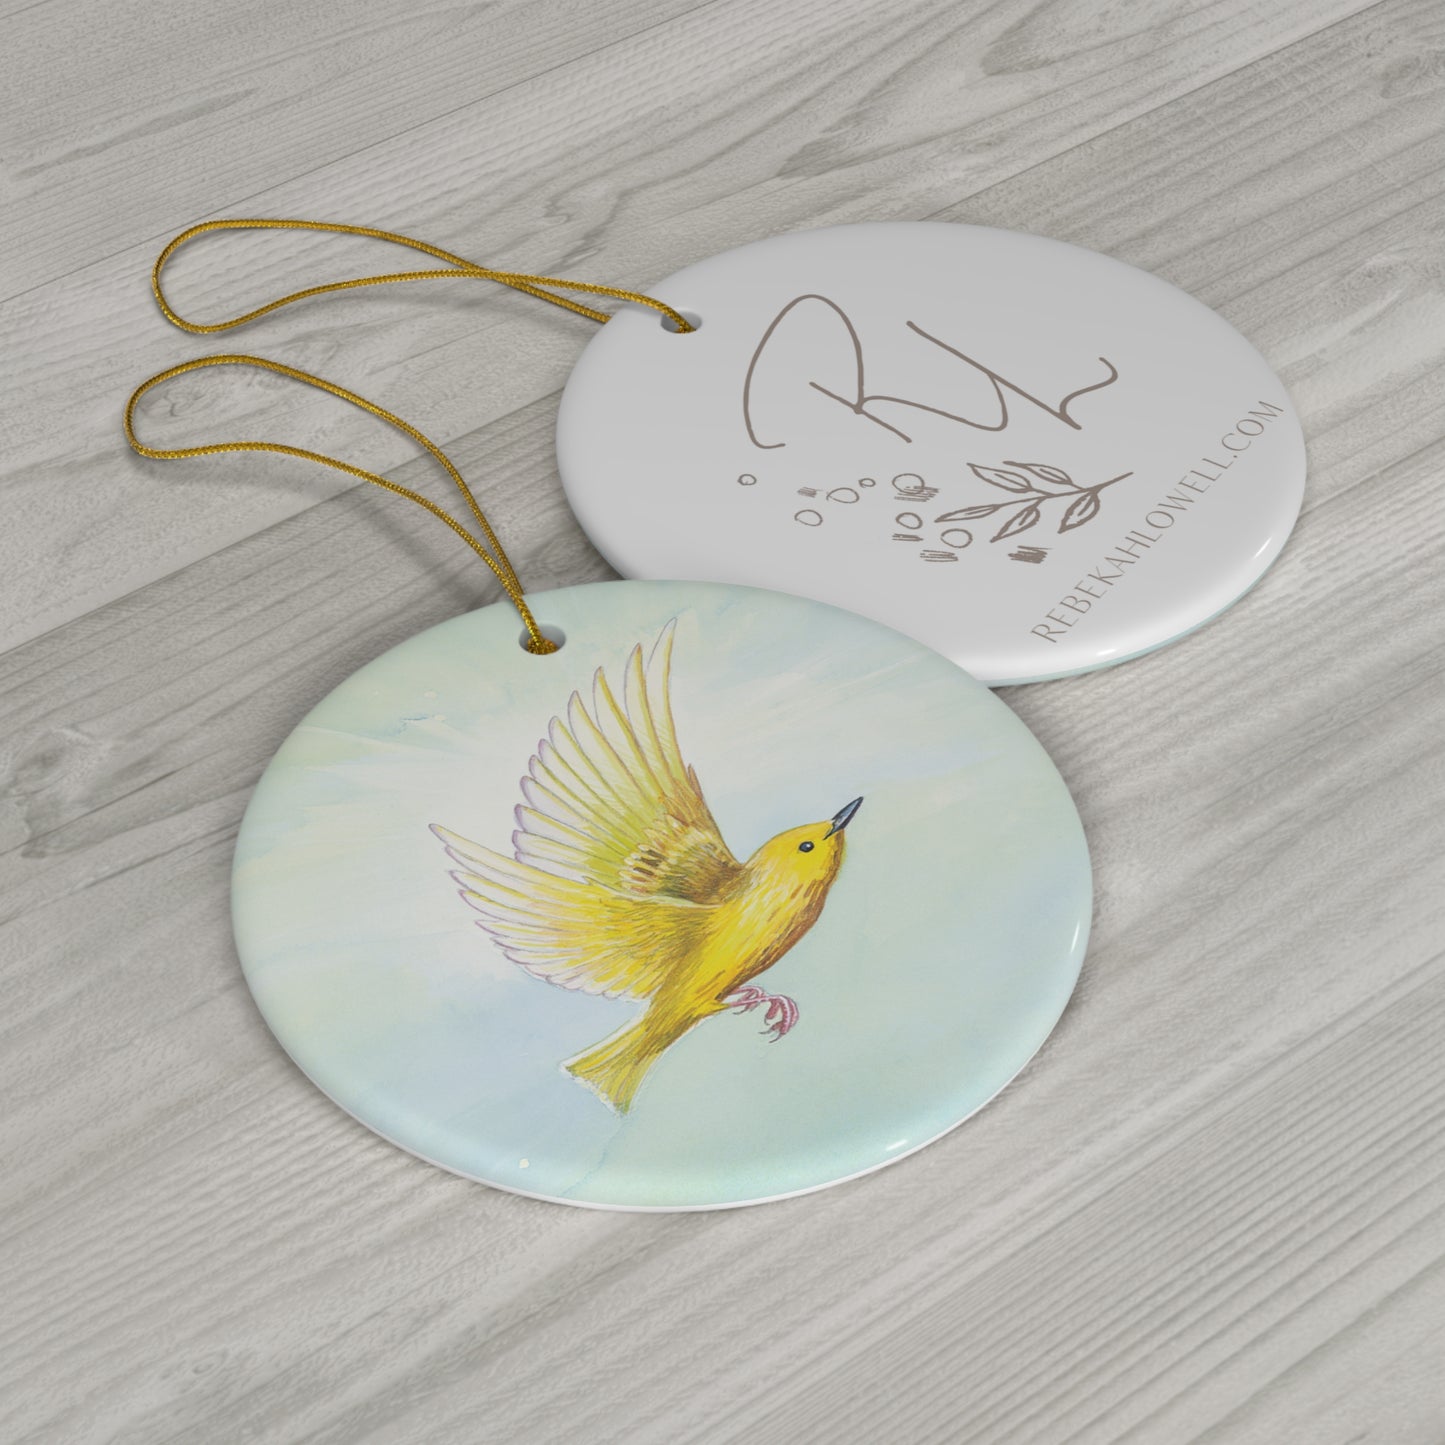 Yellow Warbler Ornament, ceramic